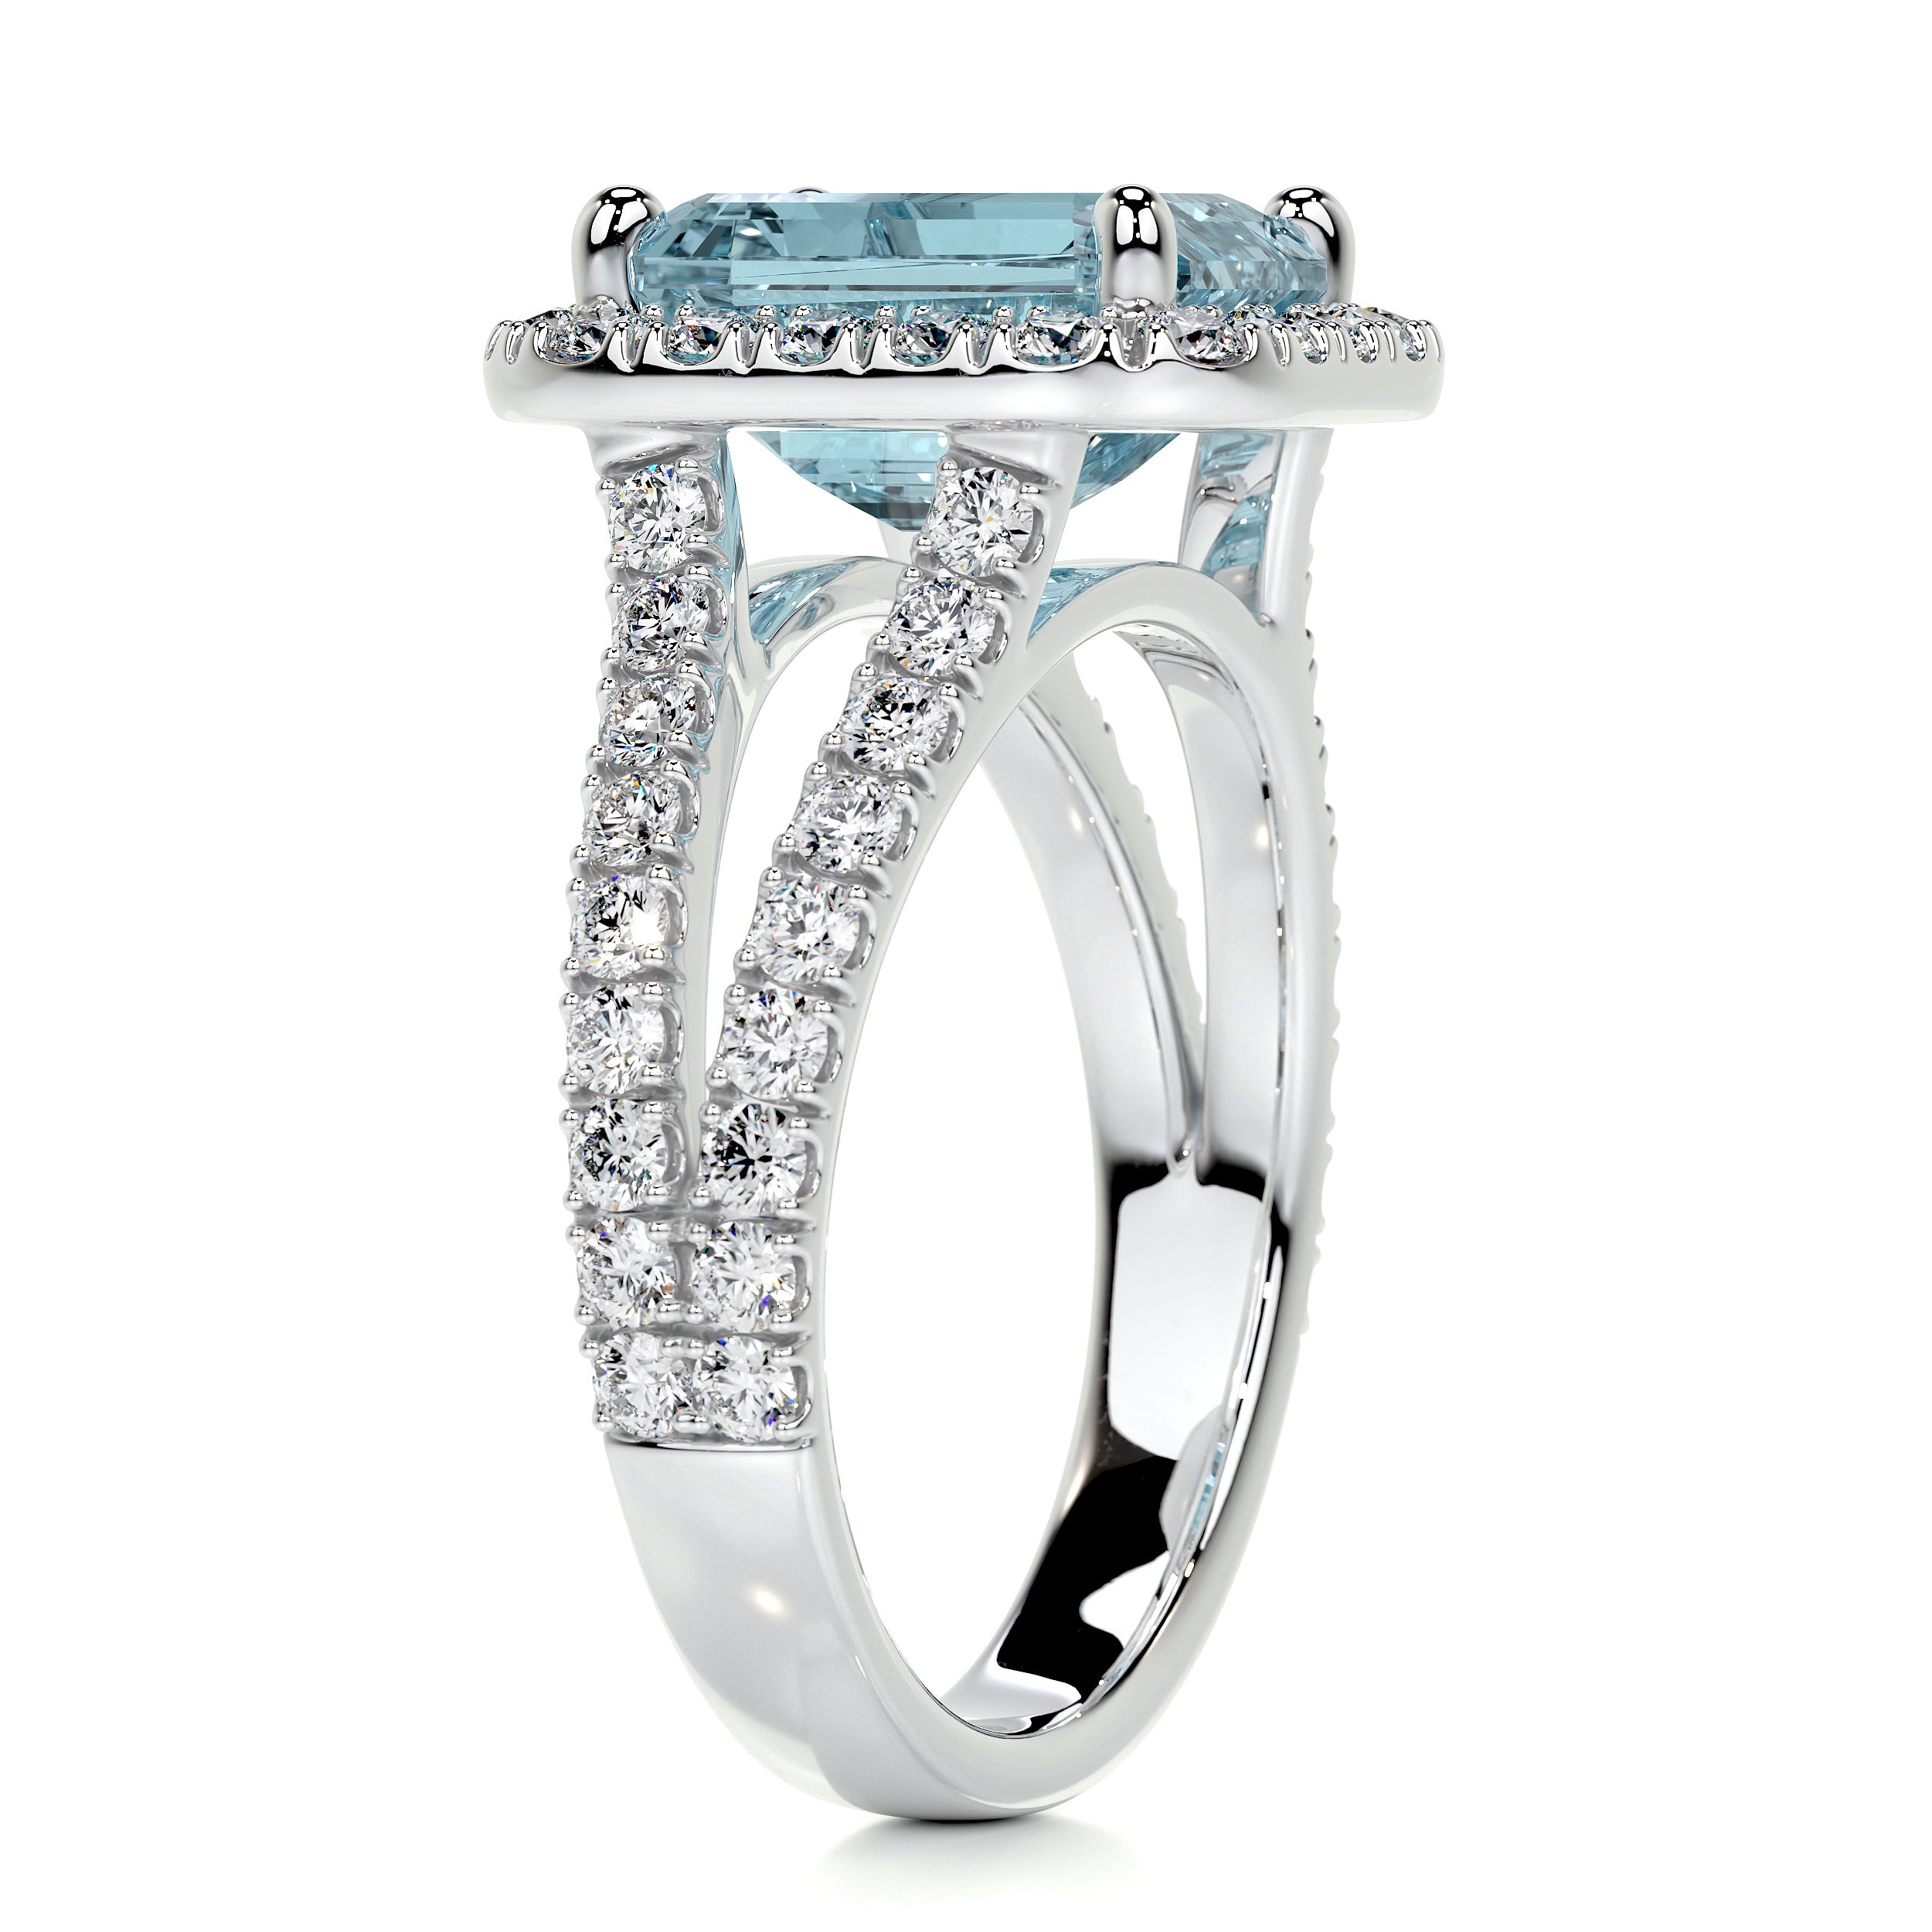 Melody Gemstone & Diamonds Ring   (5 Carat) - 18K White Gold